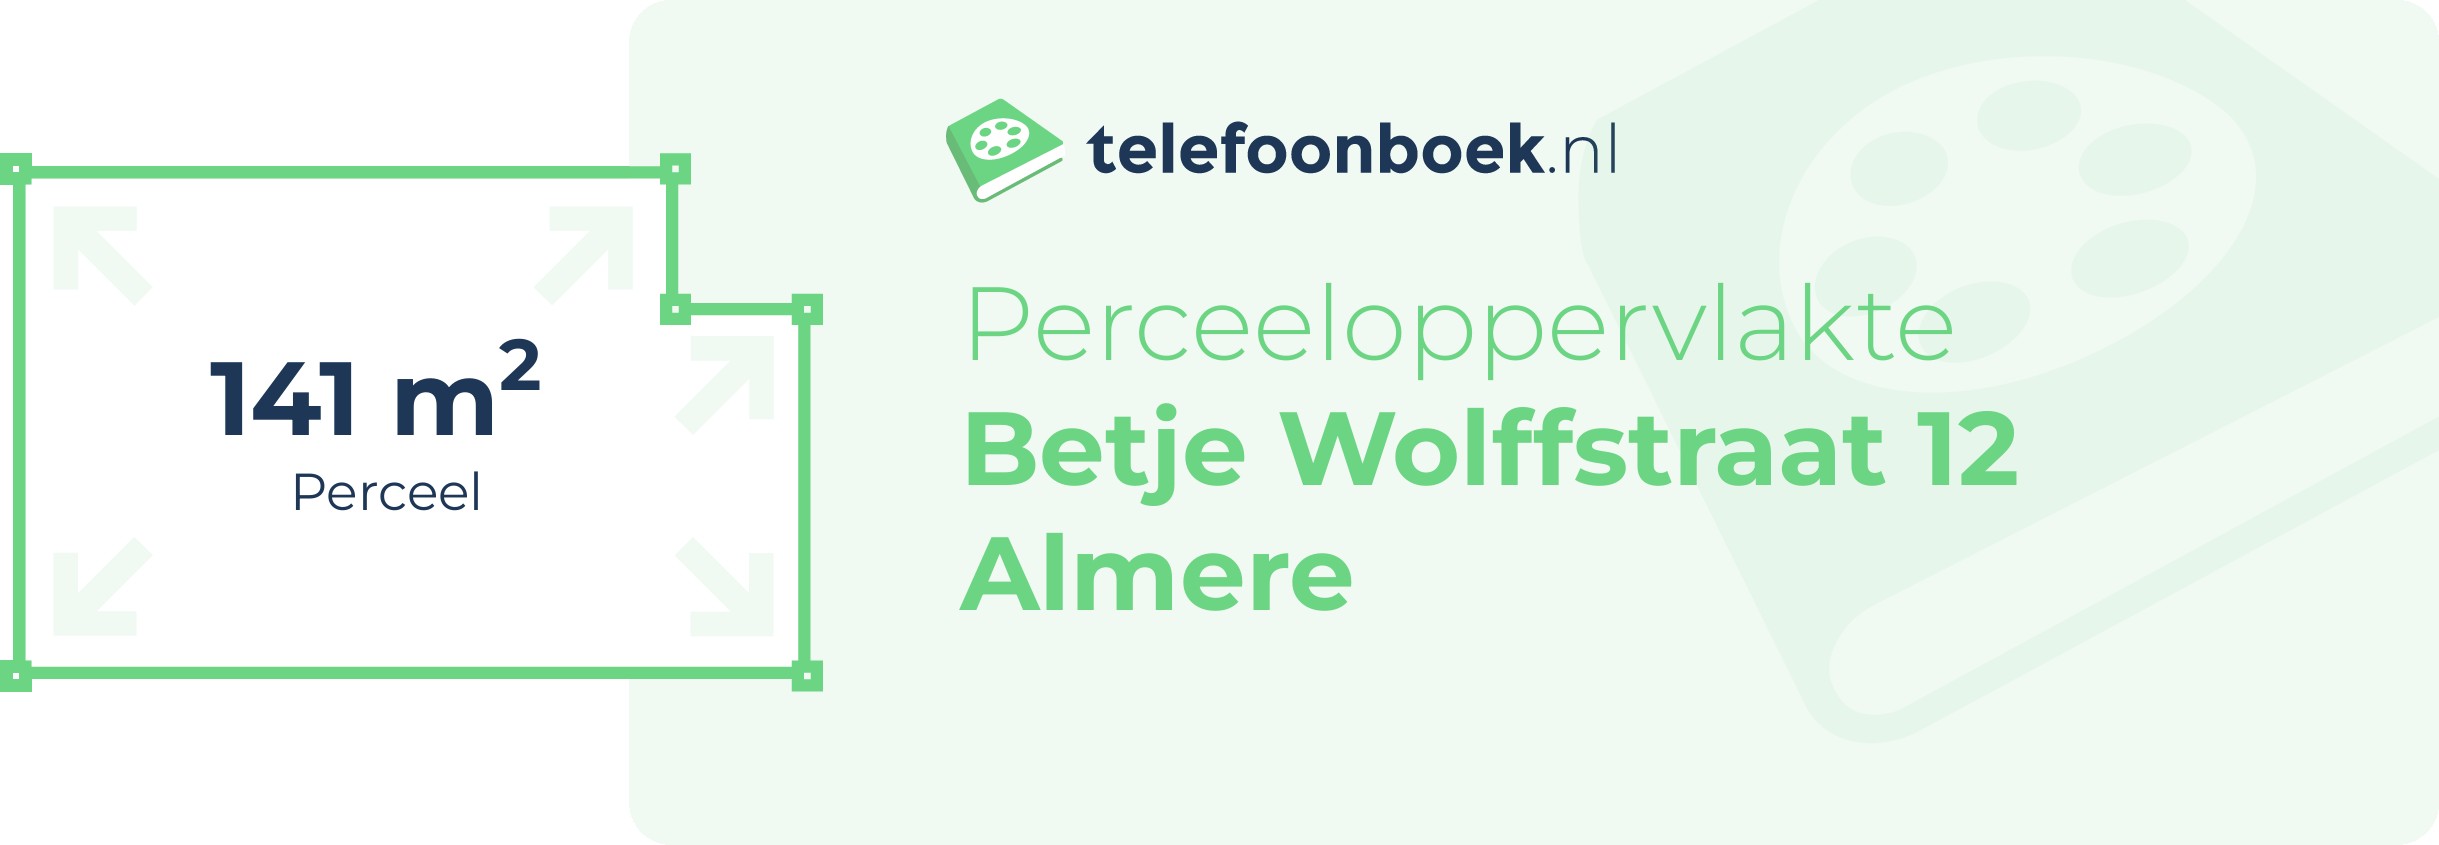 Perceeloppervlakte Betje Wolffstraat 12 Almere